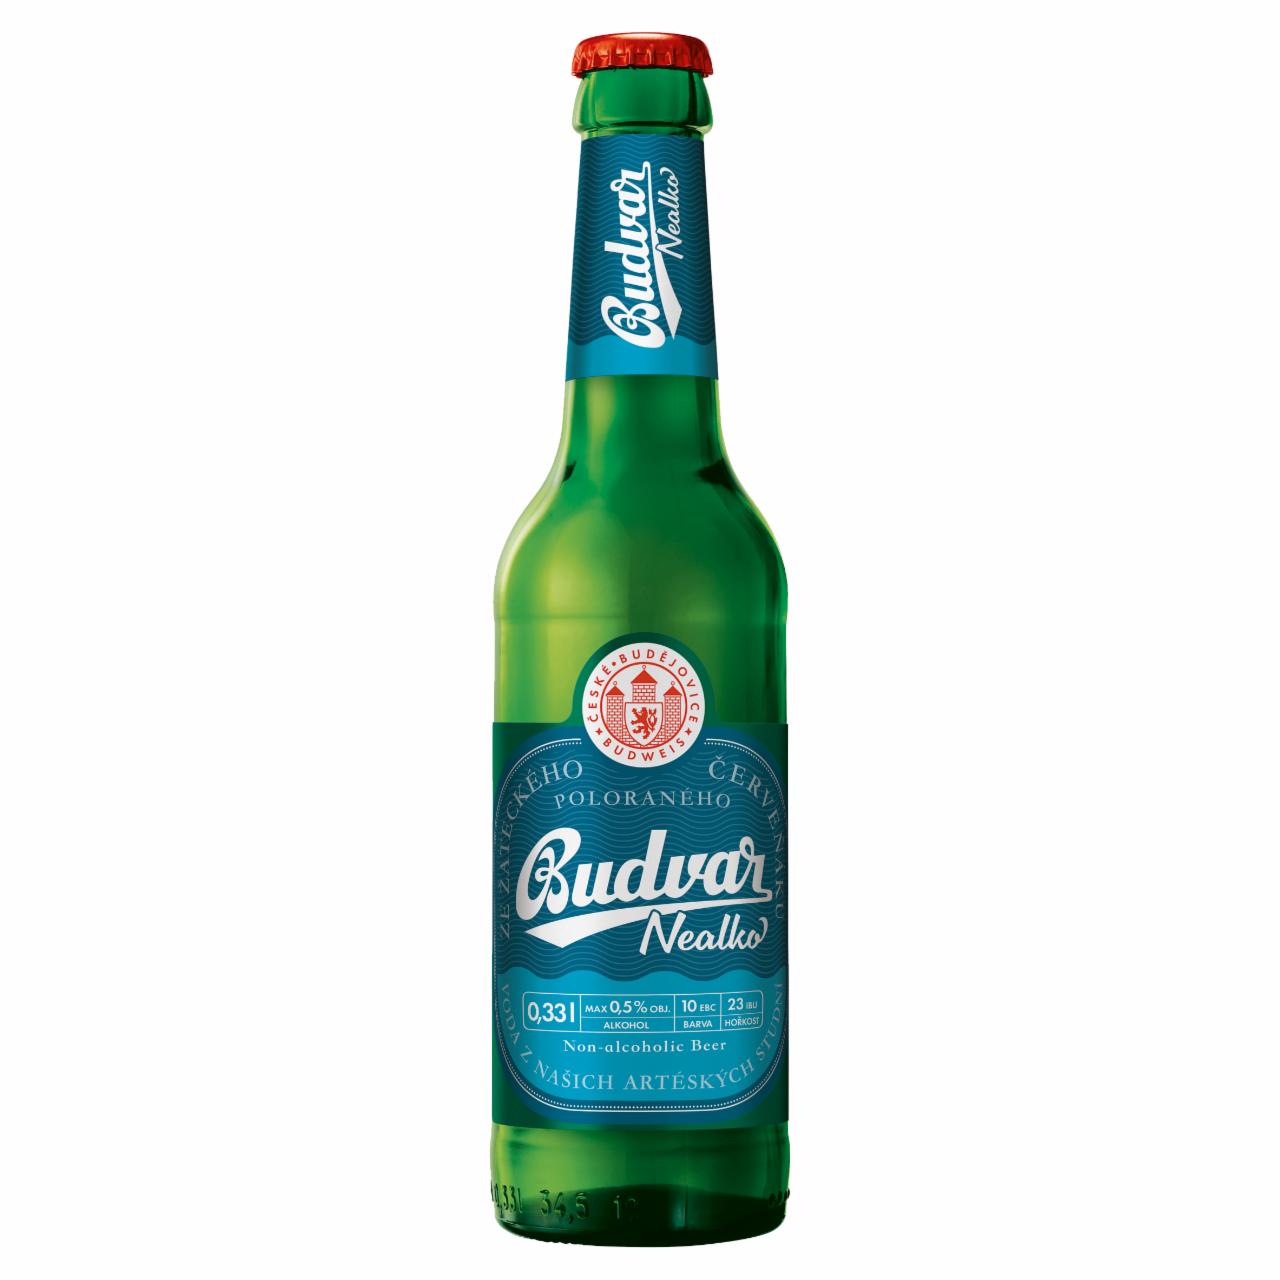 Képek - Budweiser Budvar Free cseh alkoholmentes világos sör 0,5% 0,33 l